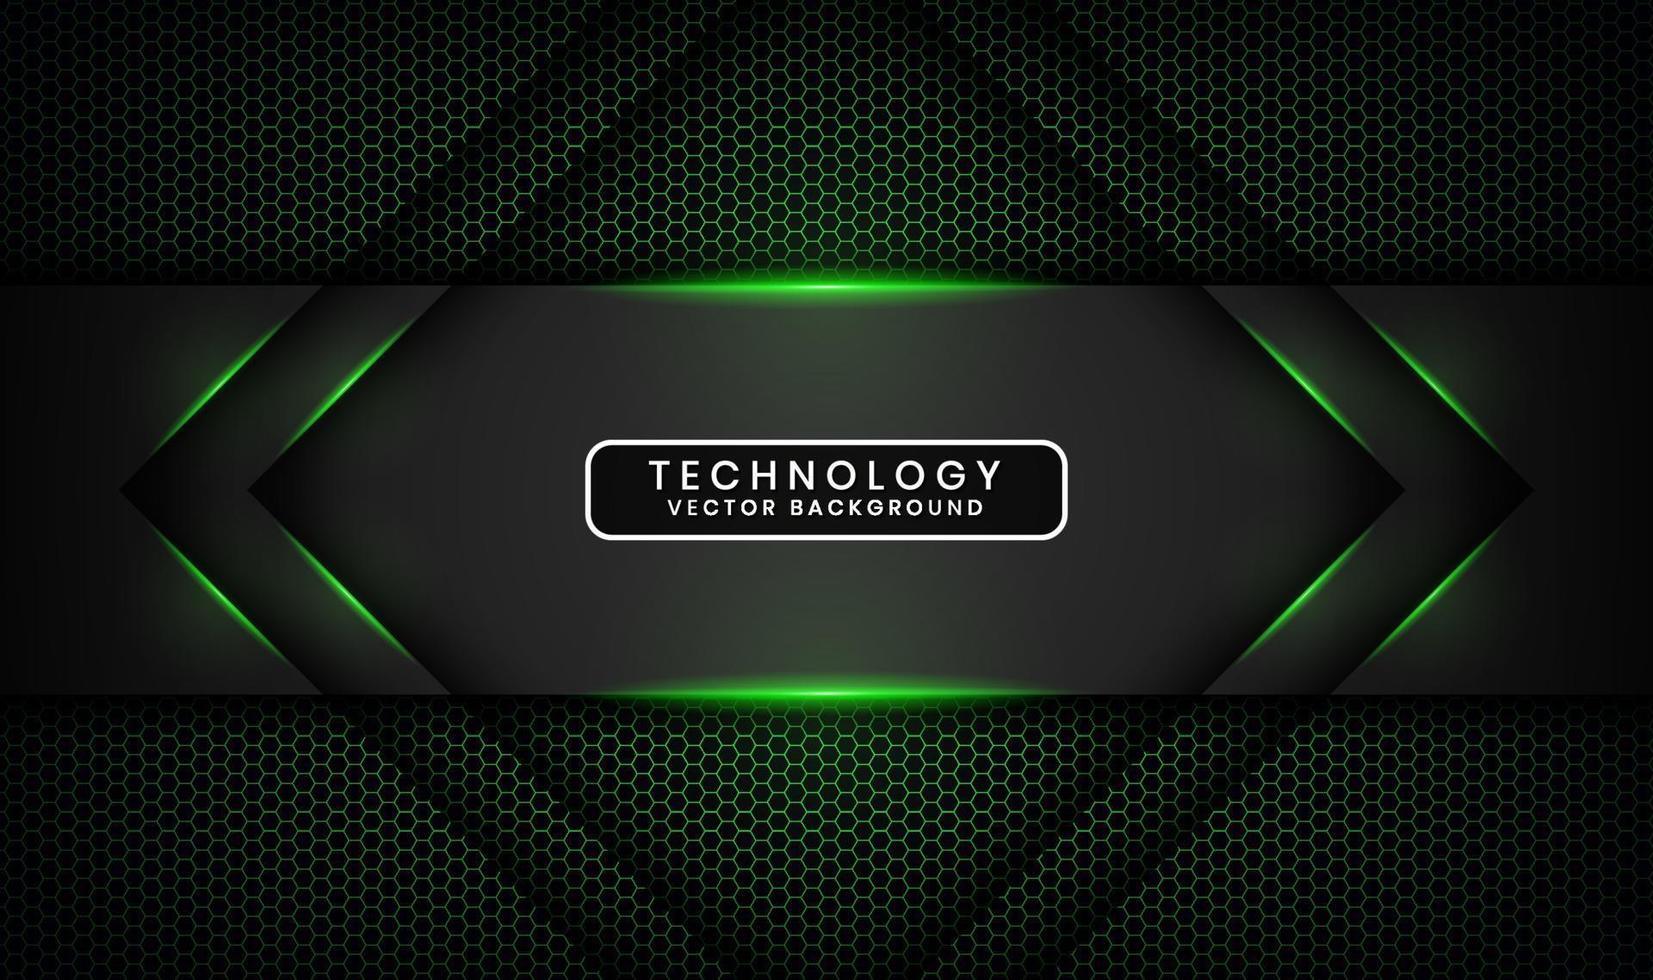 Capa de superposición de fondo abstracto de tecnología negra 3d en espacio oscuro con decoración de efecto de luz verde. elemento de diseño gráfico concepto de estilo futuro para banner, volante, portada de folleto o página de inicio vector